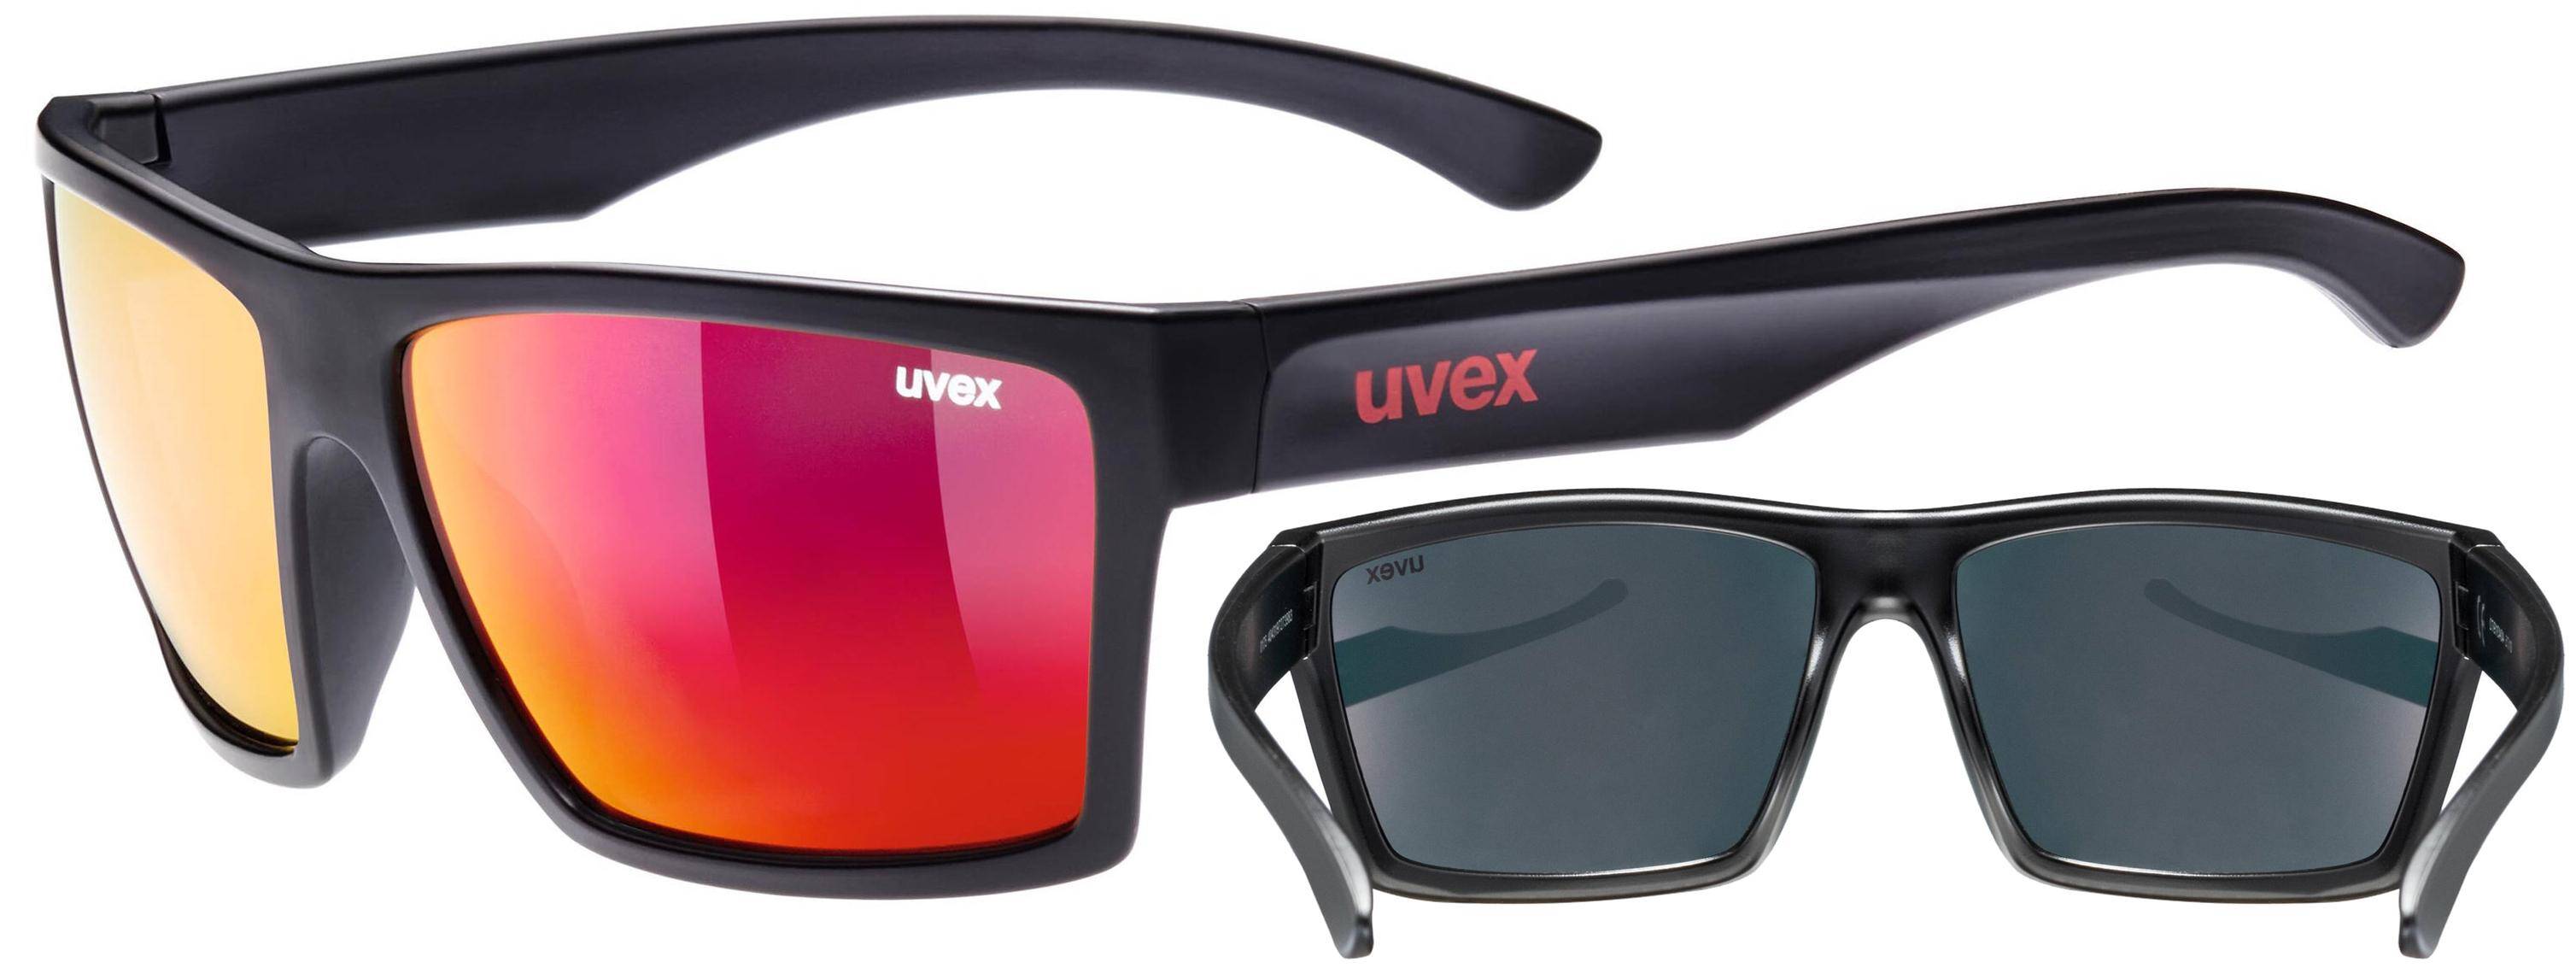 Okulary Uvex Lgl 29 przeciwsłoneczne